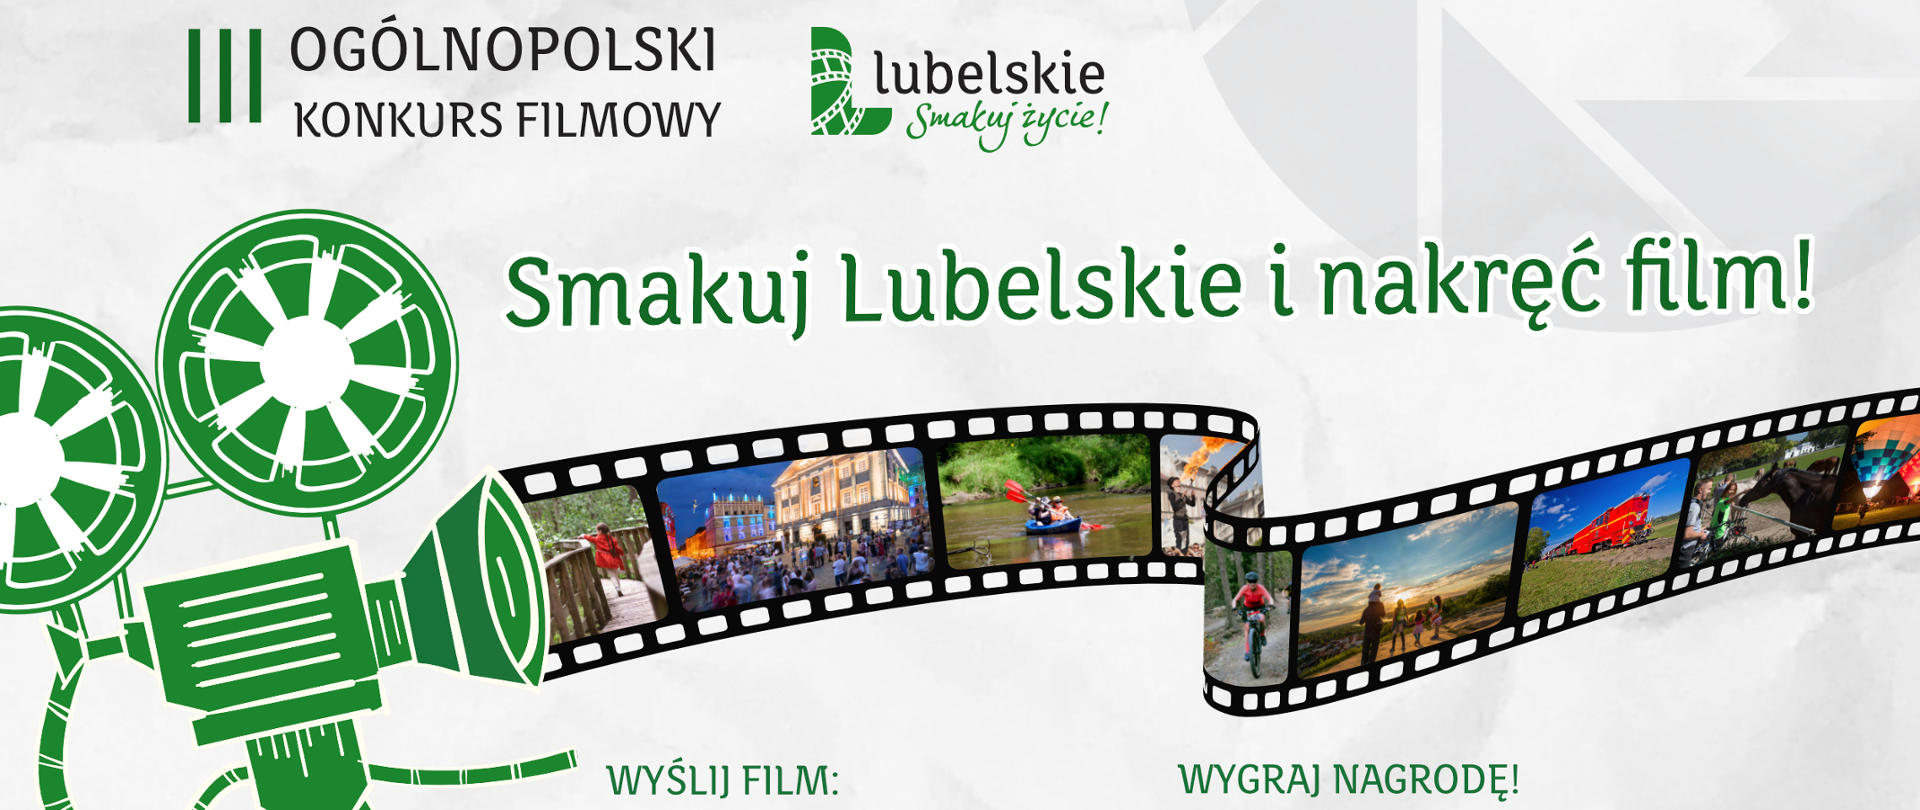 Konkurs filmowy: Smakuj Lubelskie i nakręć film